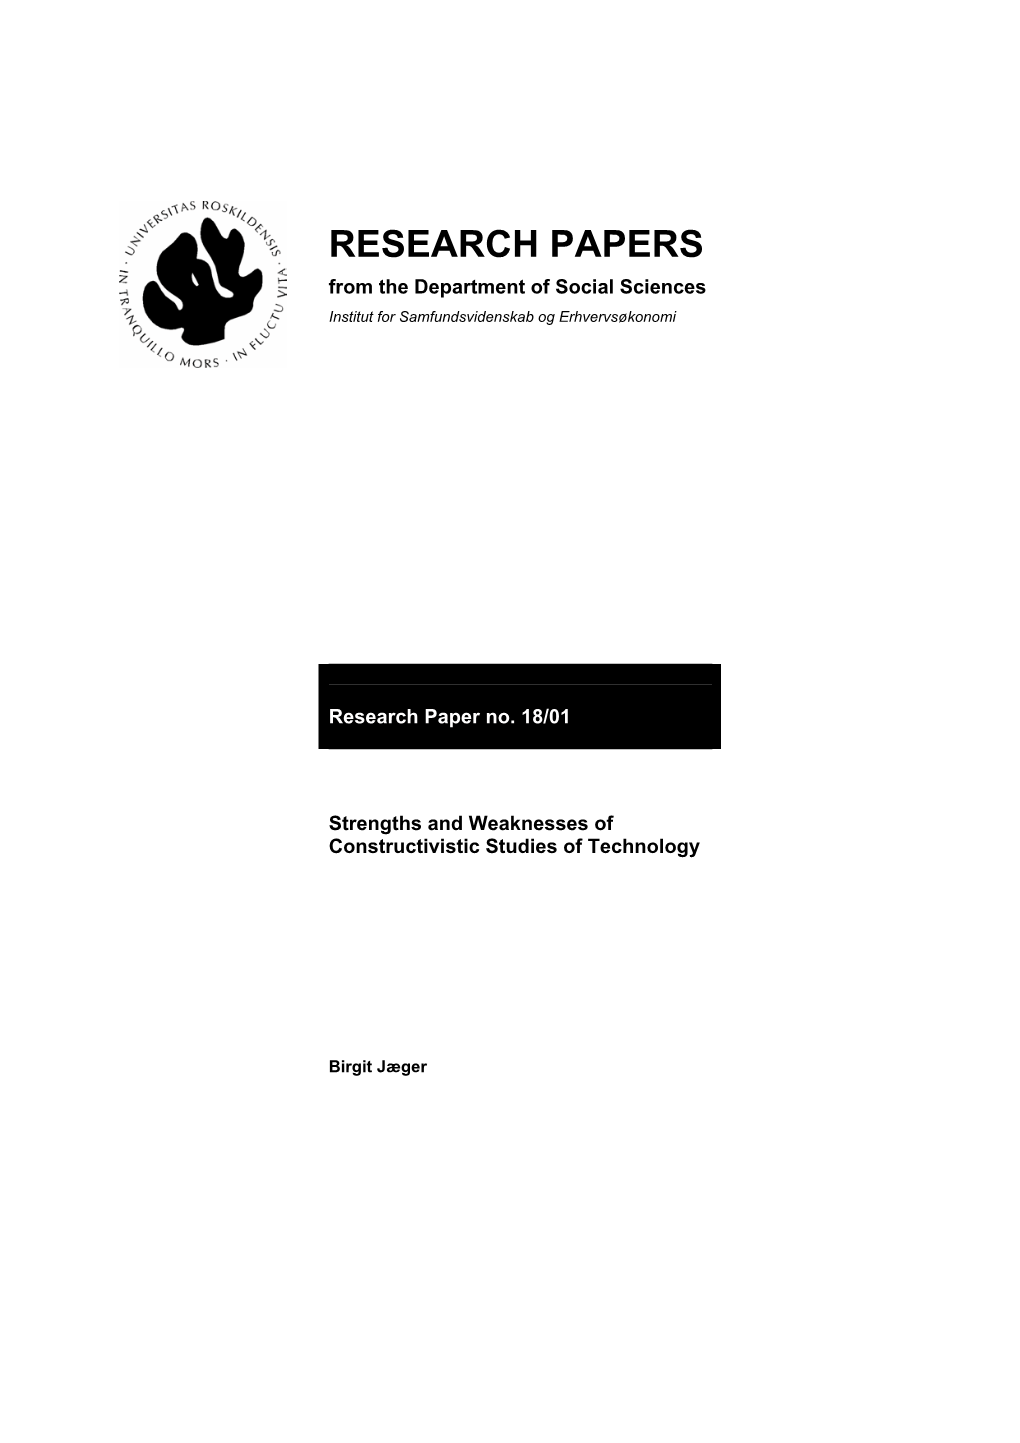 RESEARCH PAPERS from the Department of Social Sciences Institut for Samfundsvidenskab Og Erhvervsøkonomi